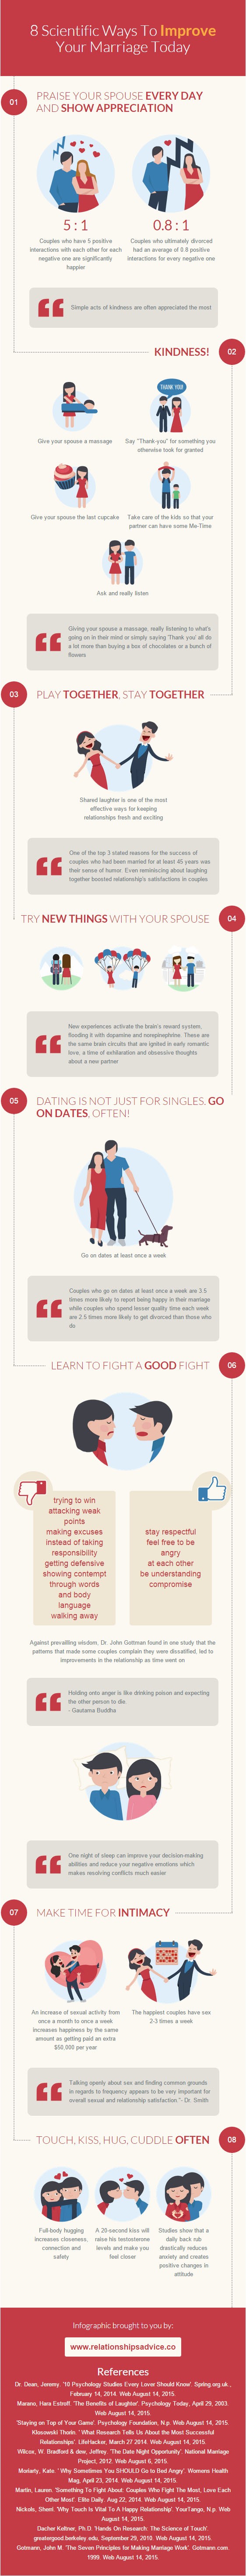 Hva er hemmelighetene til et lykkelig ekteskap? (Infographic: relationsadvice.co)